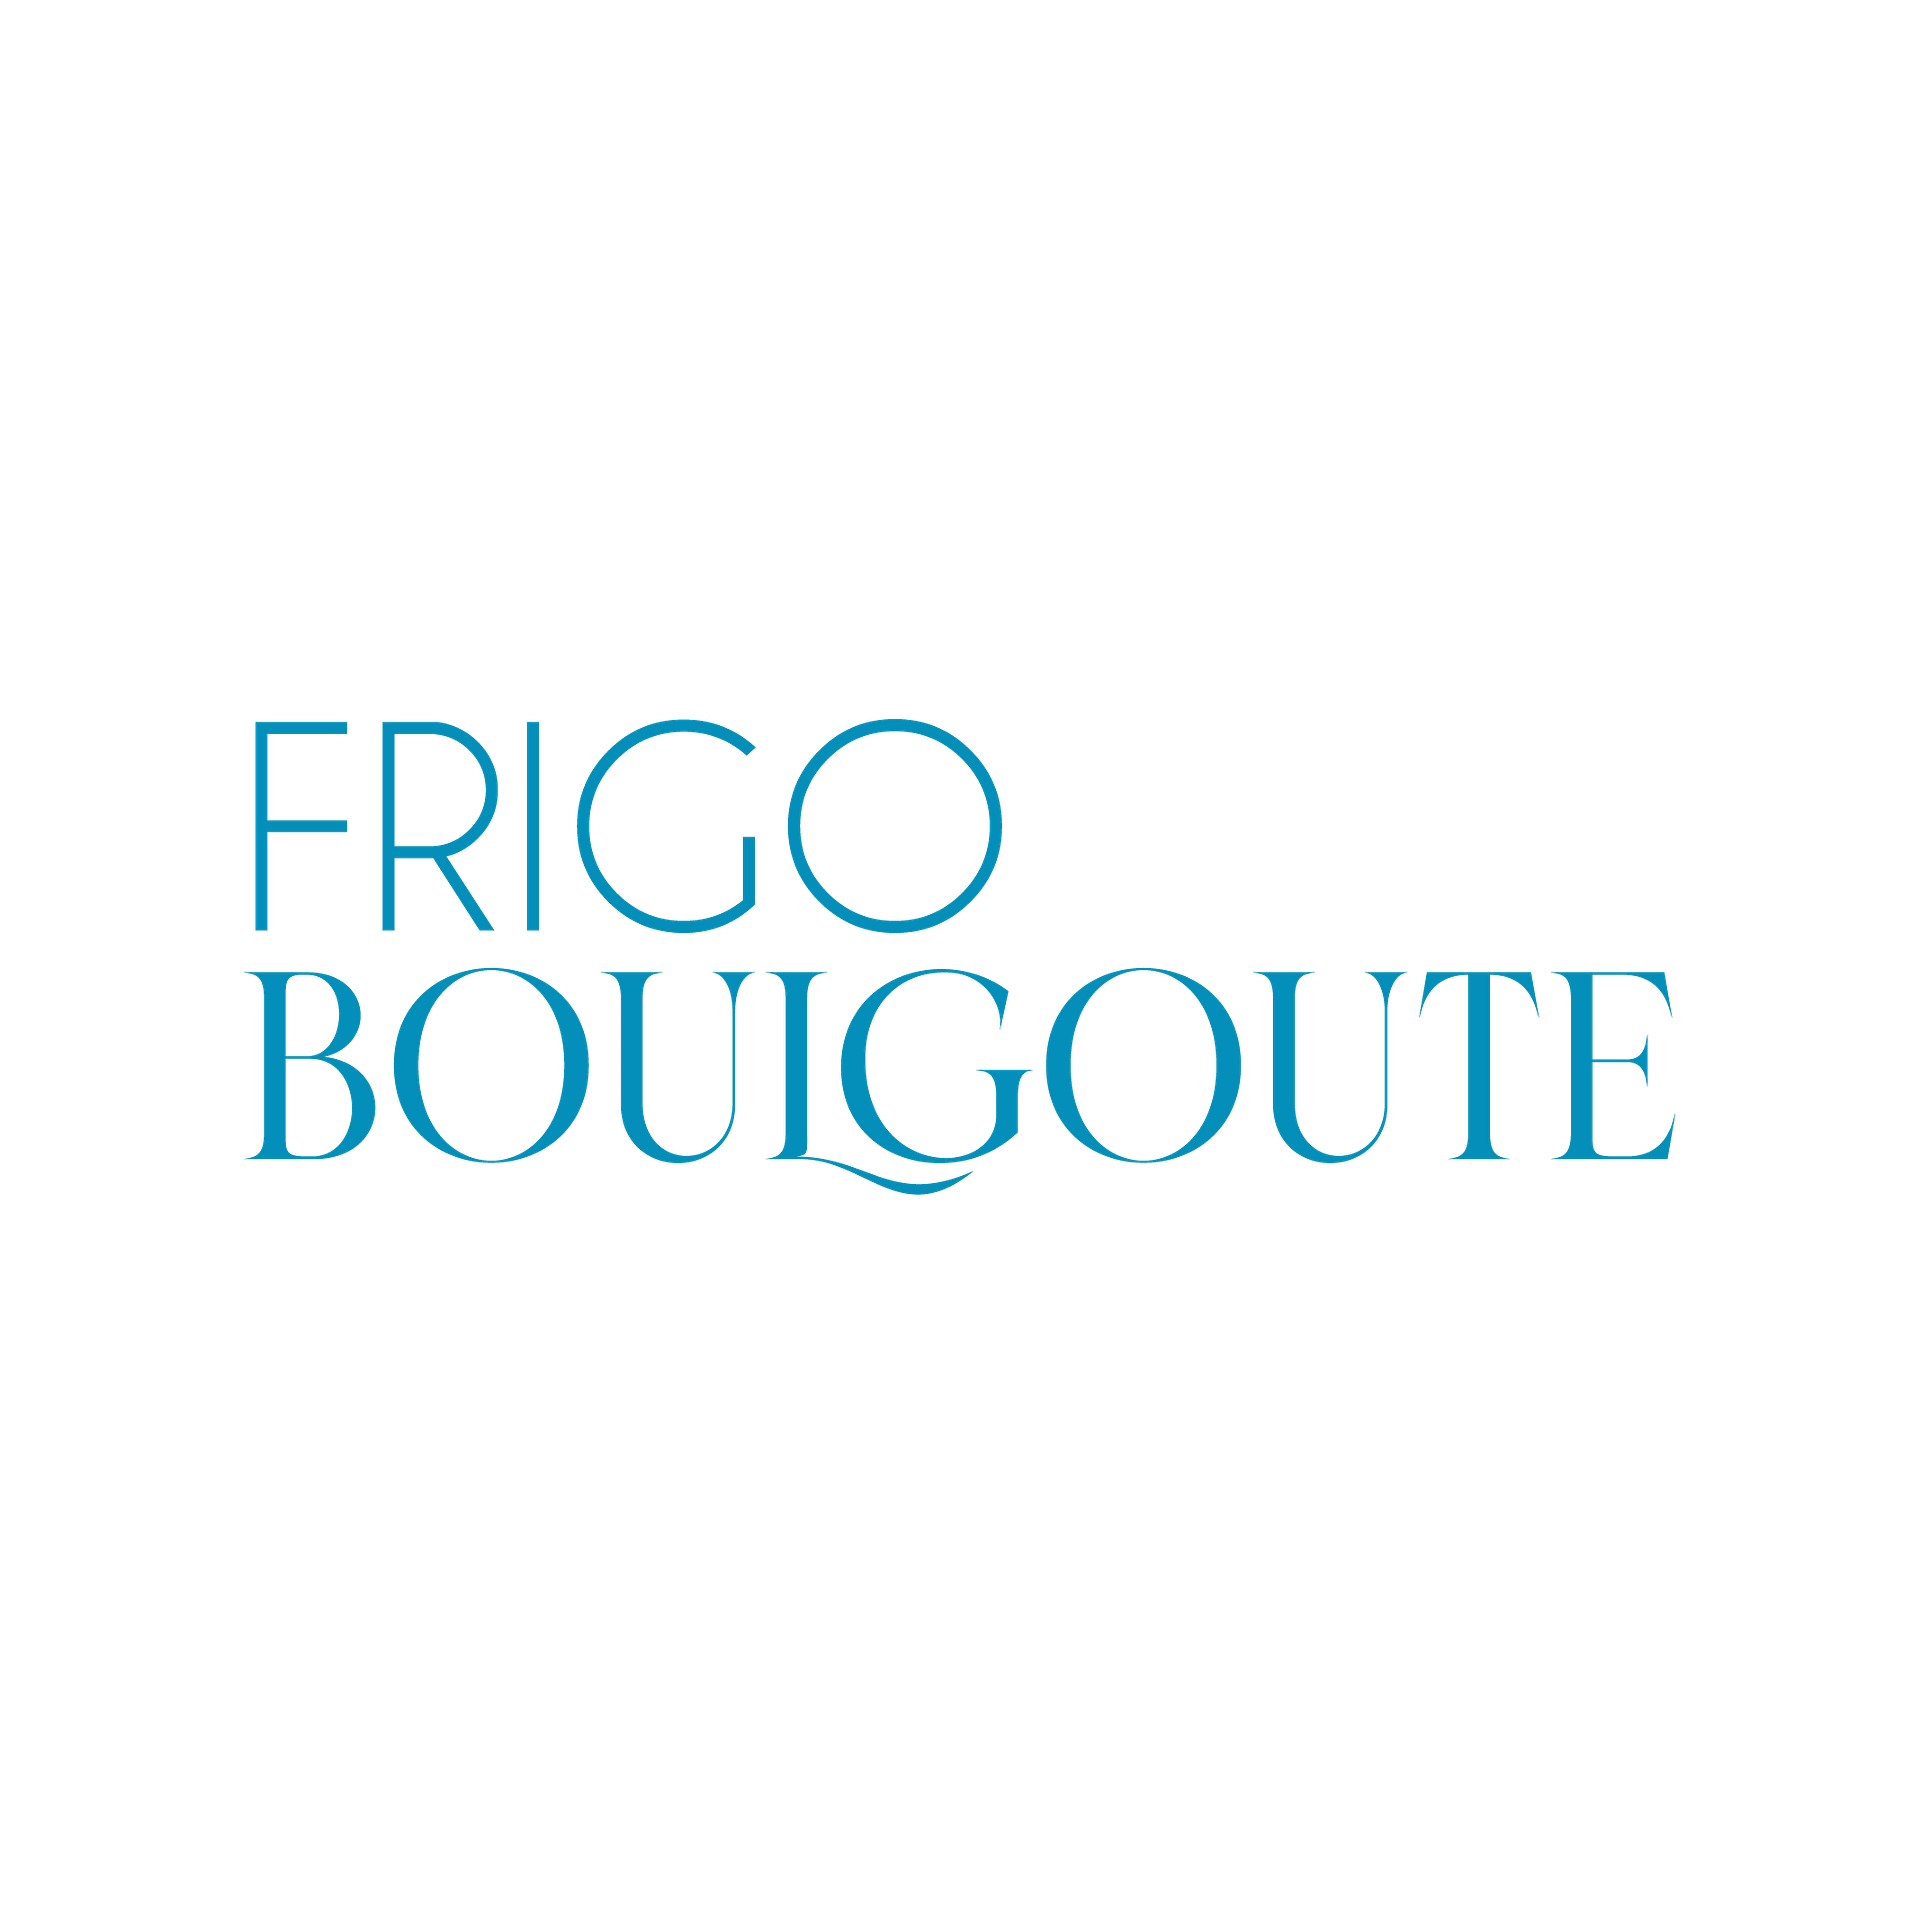 frigo-boulgoute